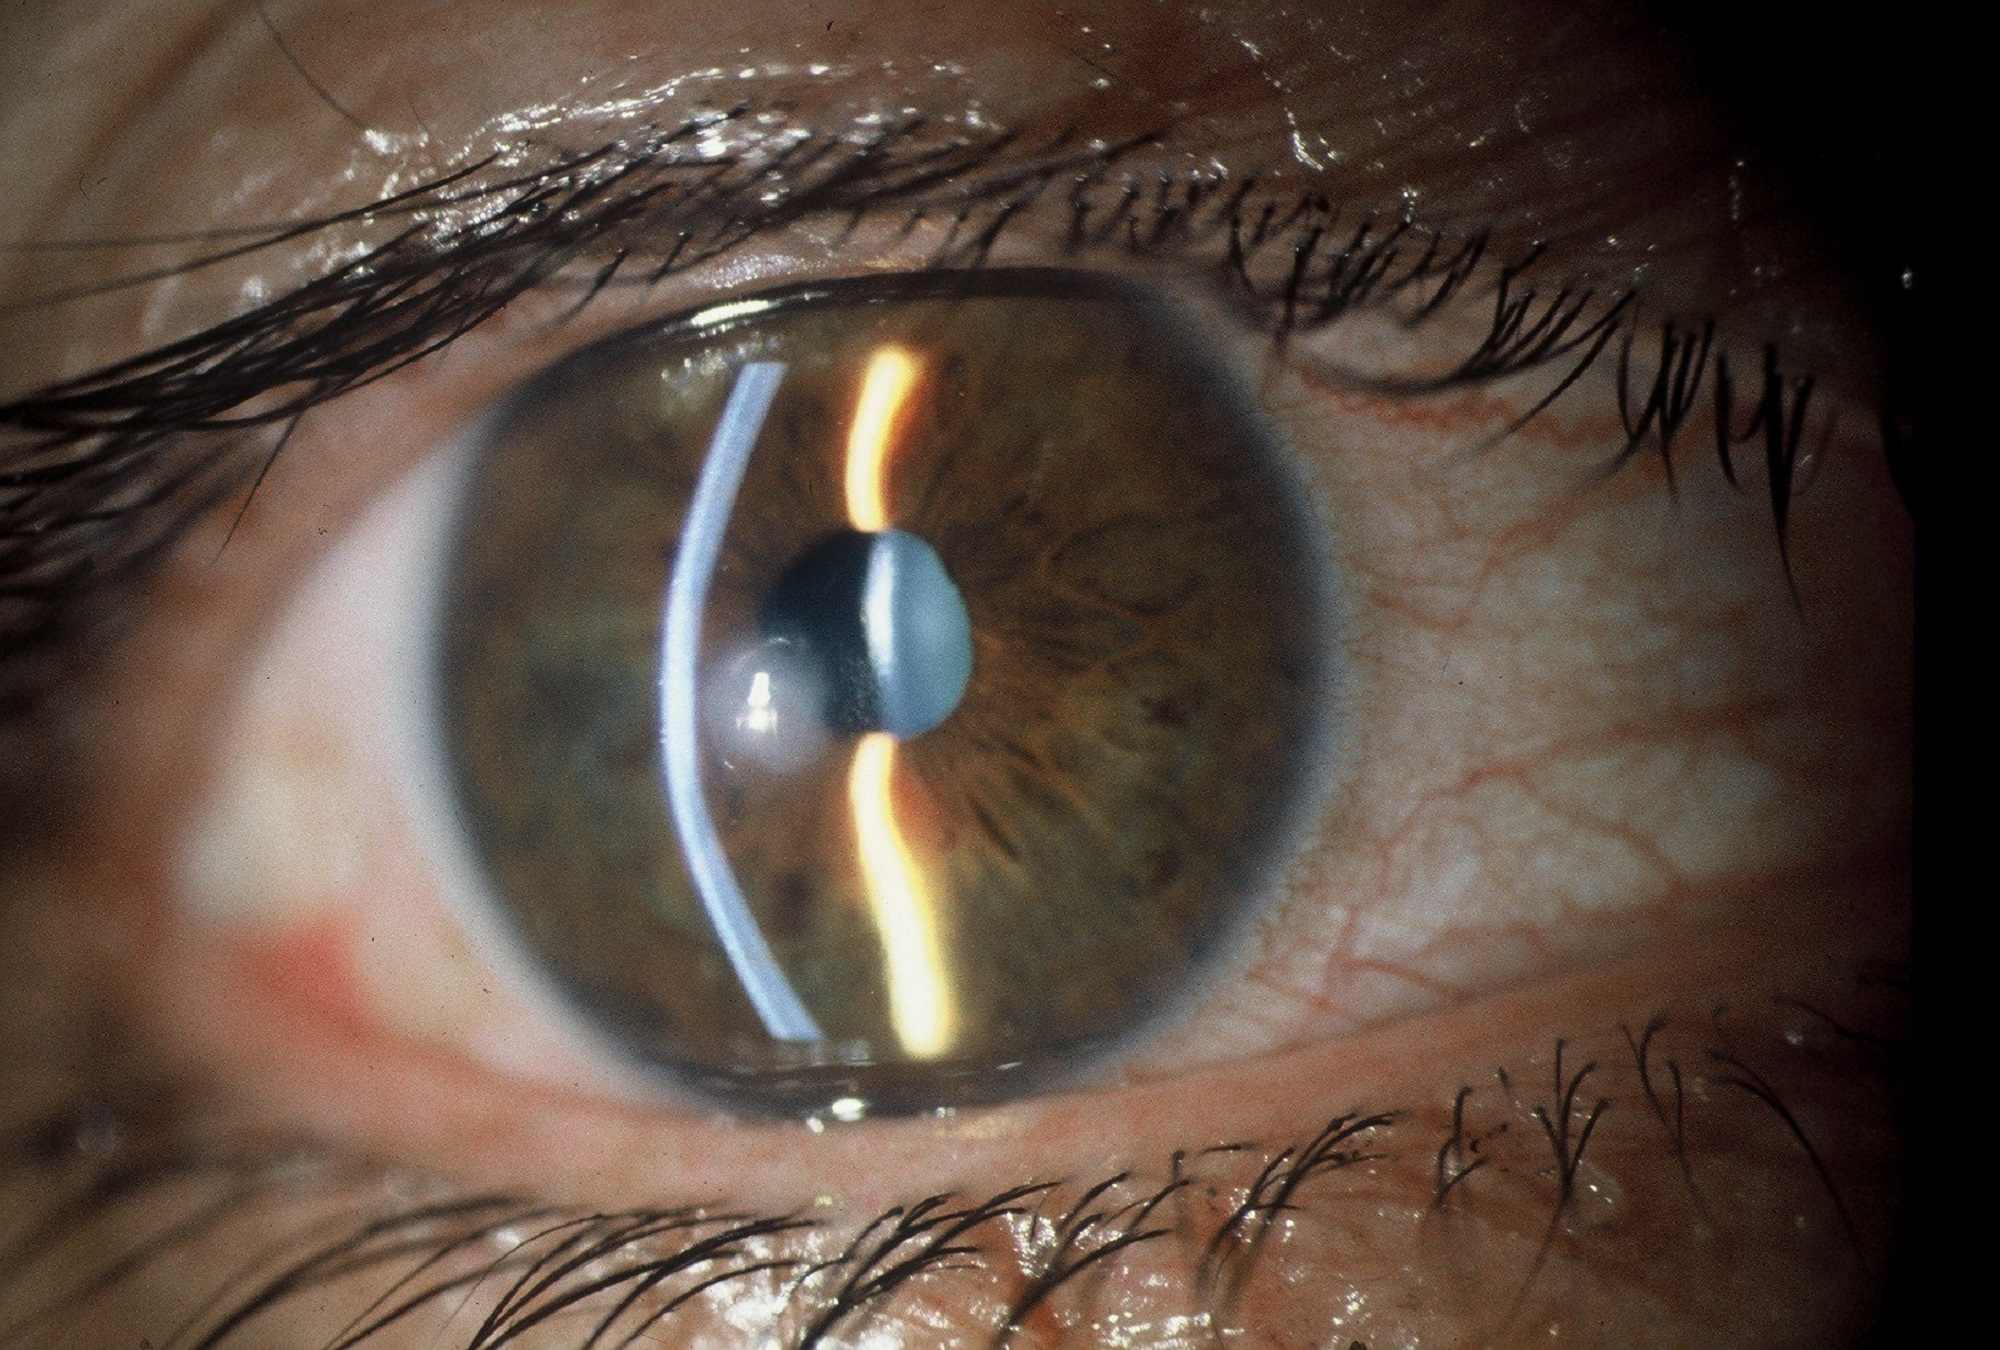 Κερατοειδής χιτώνας από κολλαγόνο χοίρου αποκατέστησε την όραση σε τυφλούς ανθρώπους